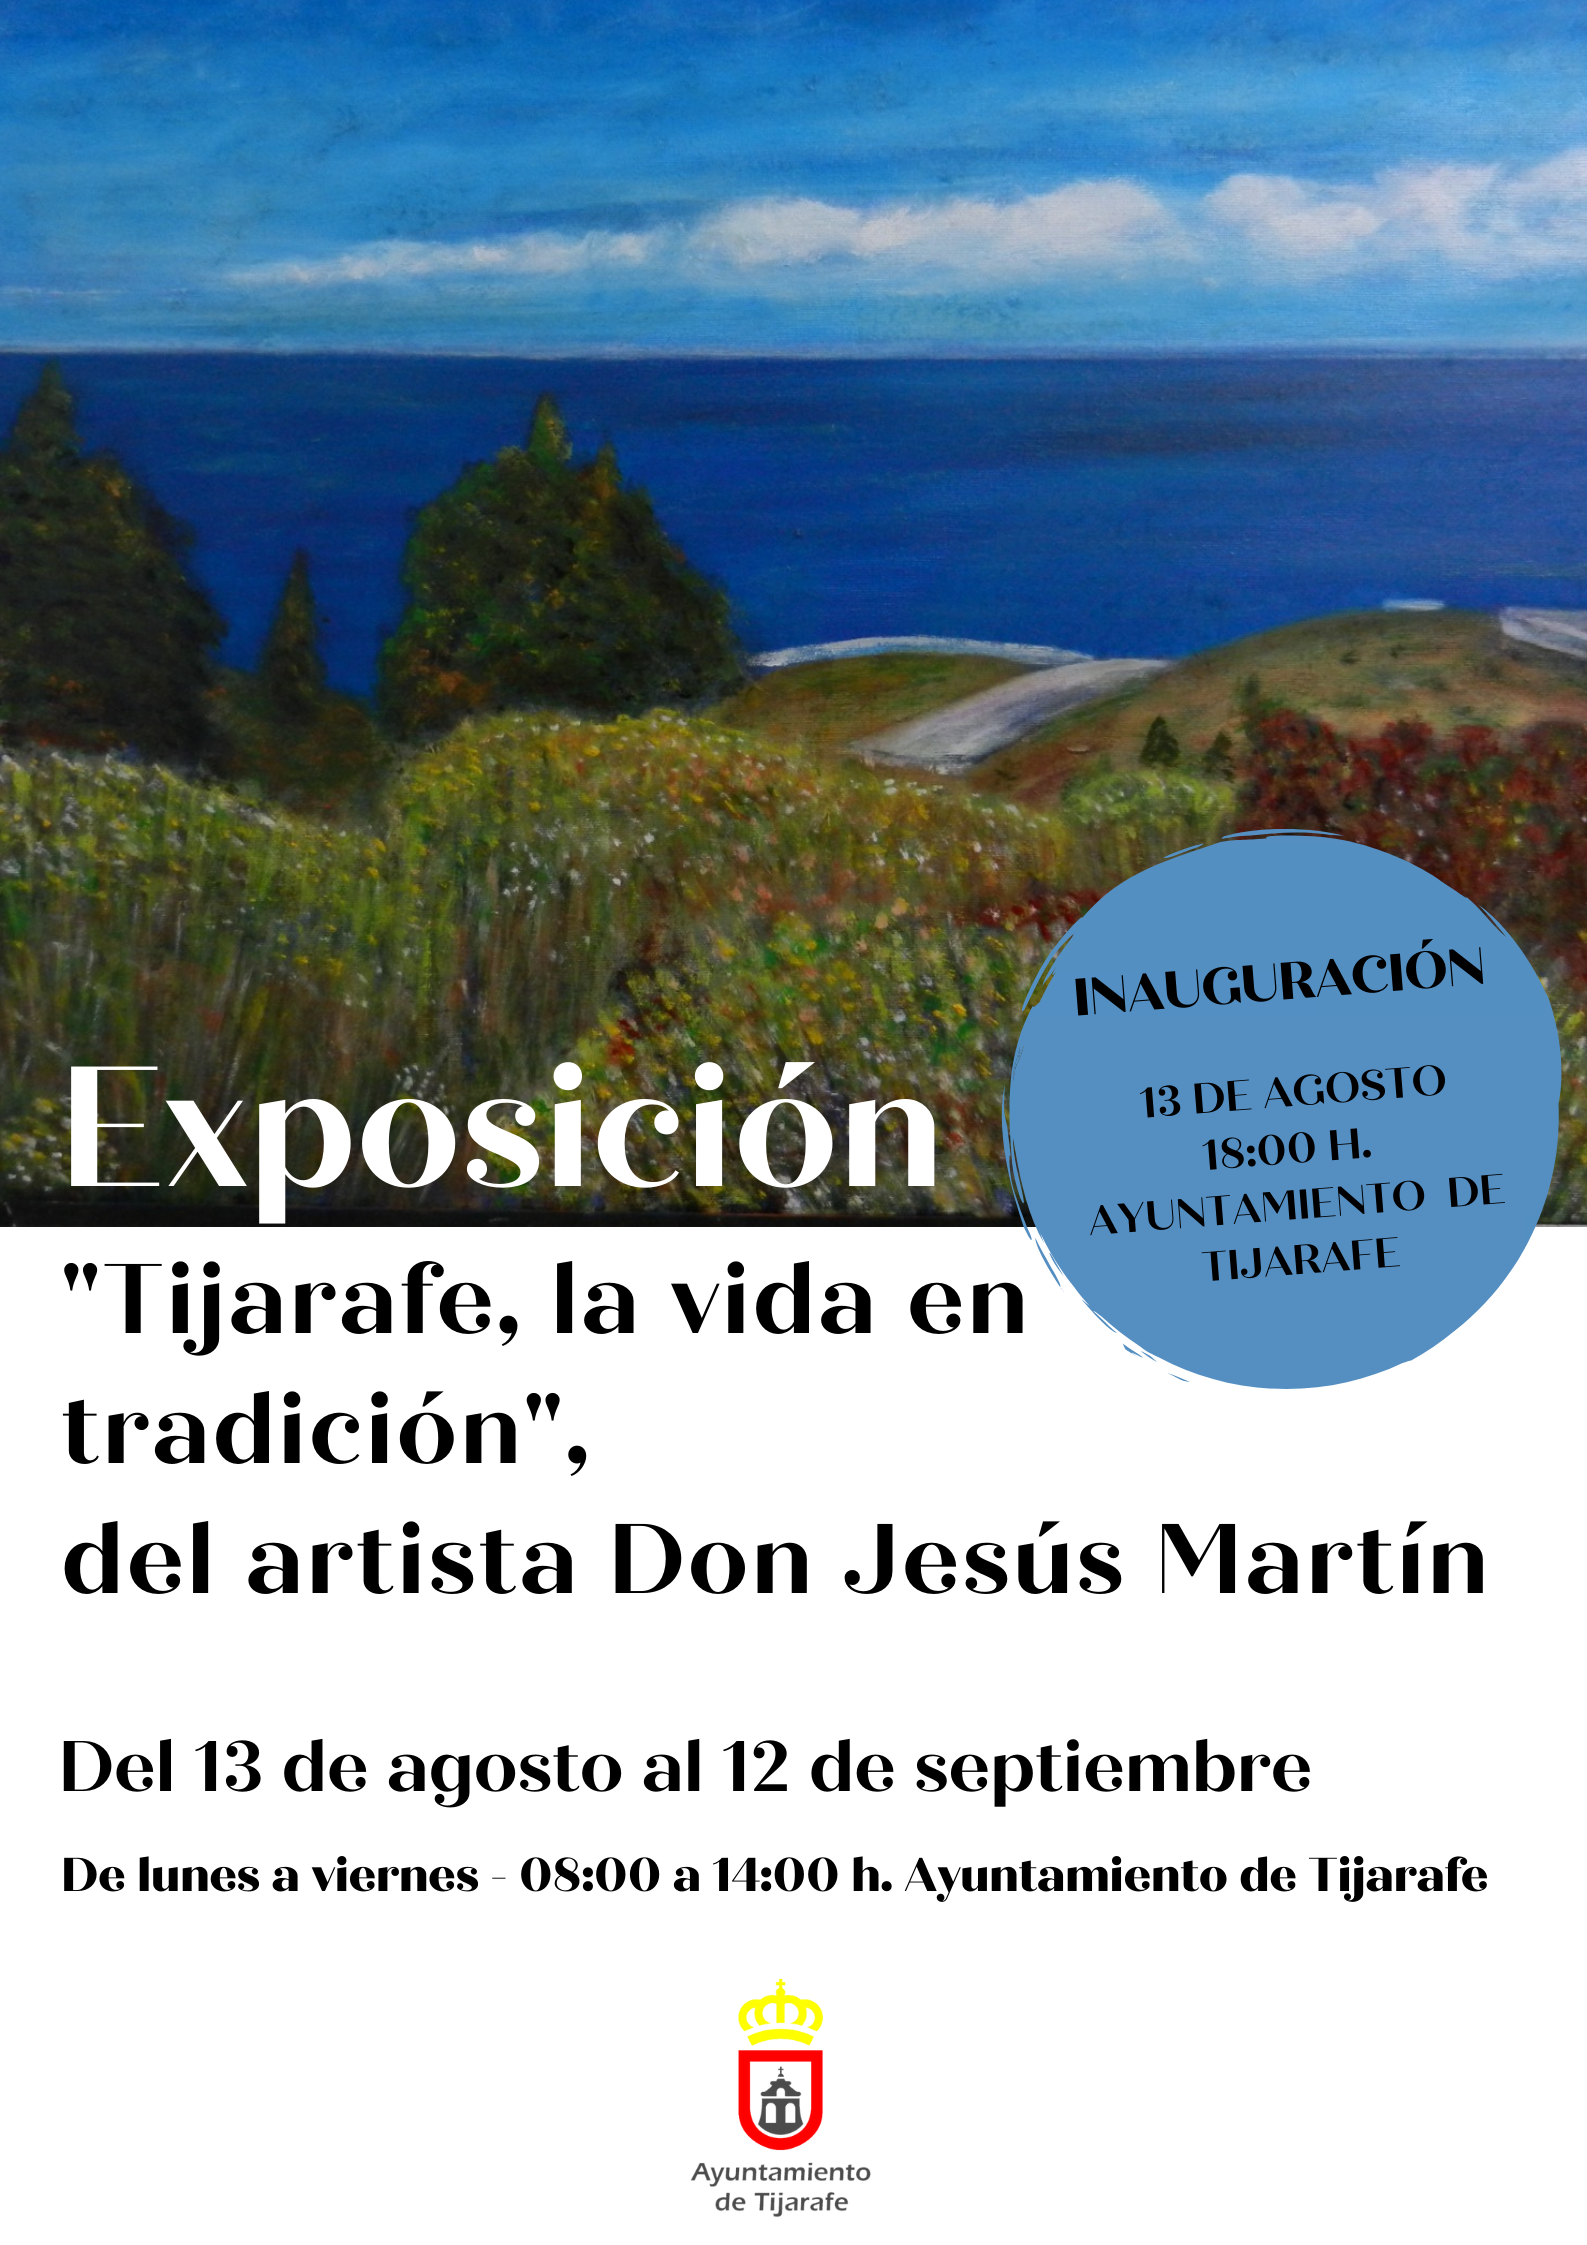 Exposición “Tijarafe, la vida en tradición” del artista Don Jesus Martín